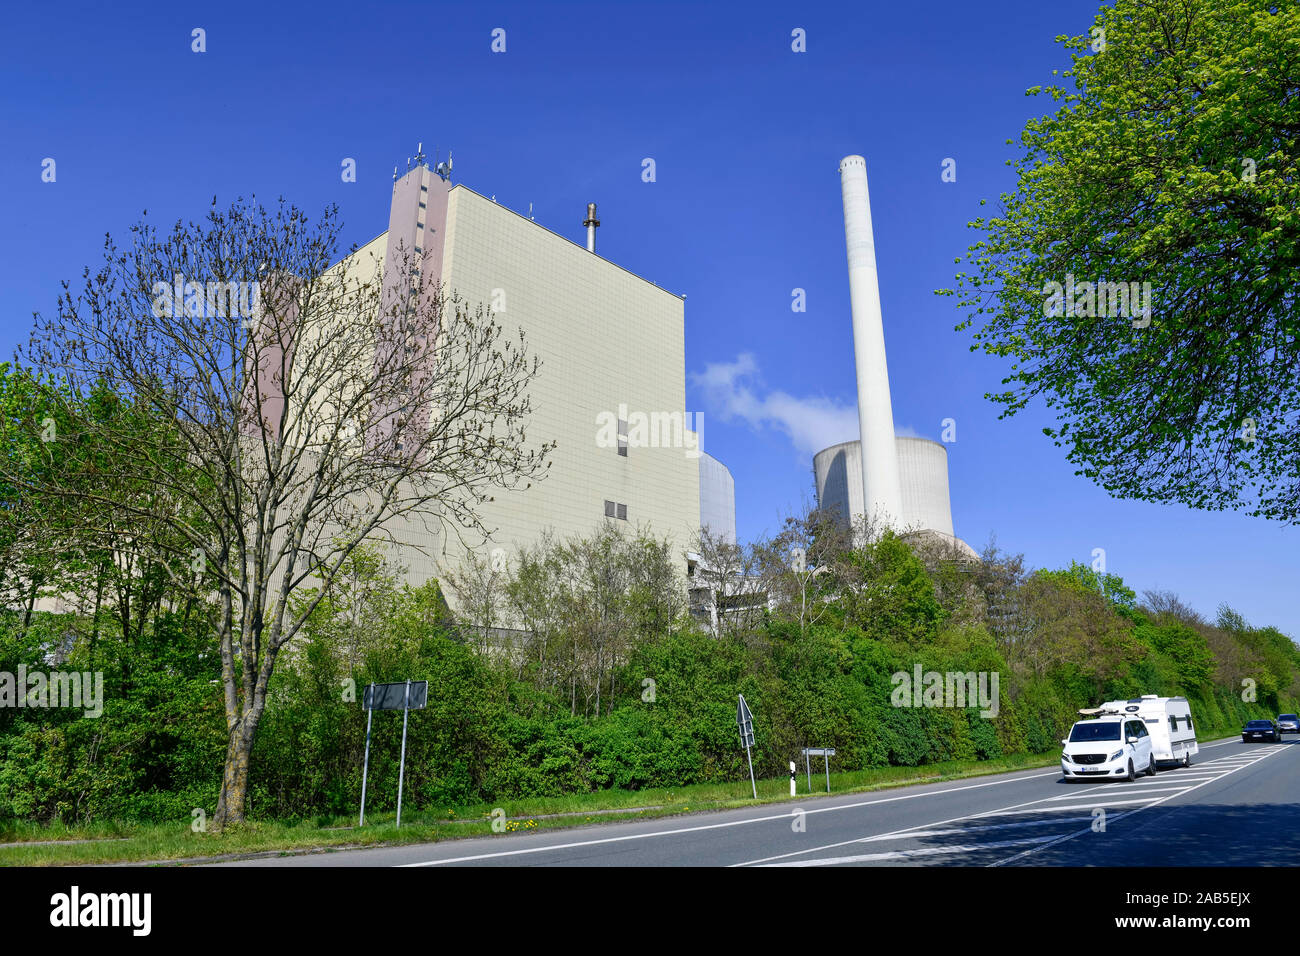 Kraftwerk Heyden, Lahde, Petershagen, Kreis Minden-Lübbecke, Nordrhein-Westfalen, Deutschland Stock Photo